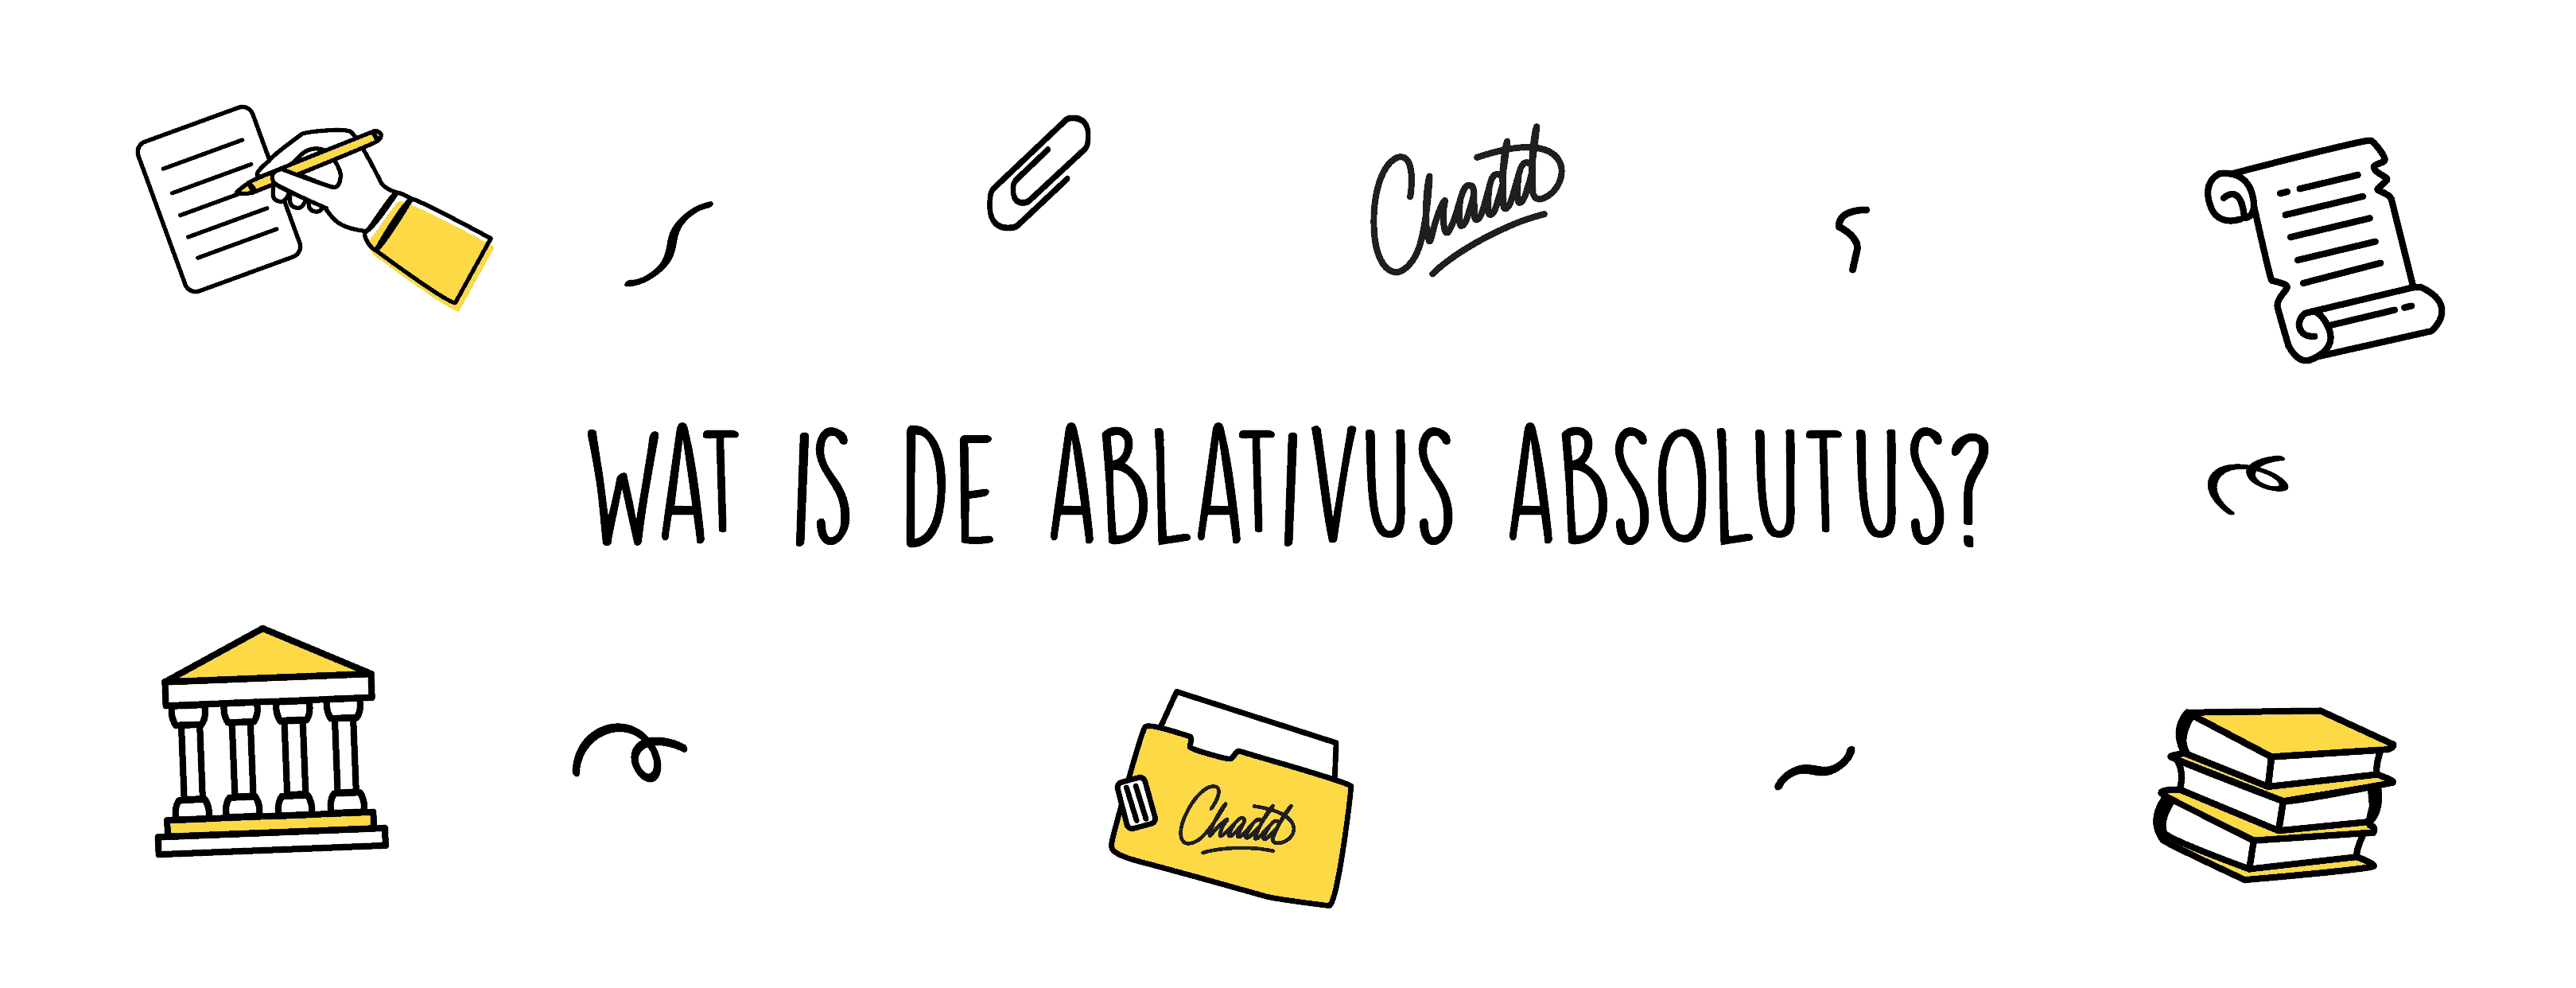 Wat is de ablativus absolutus